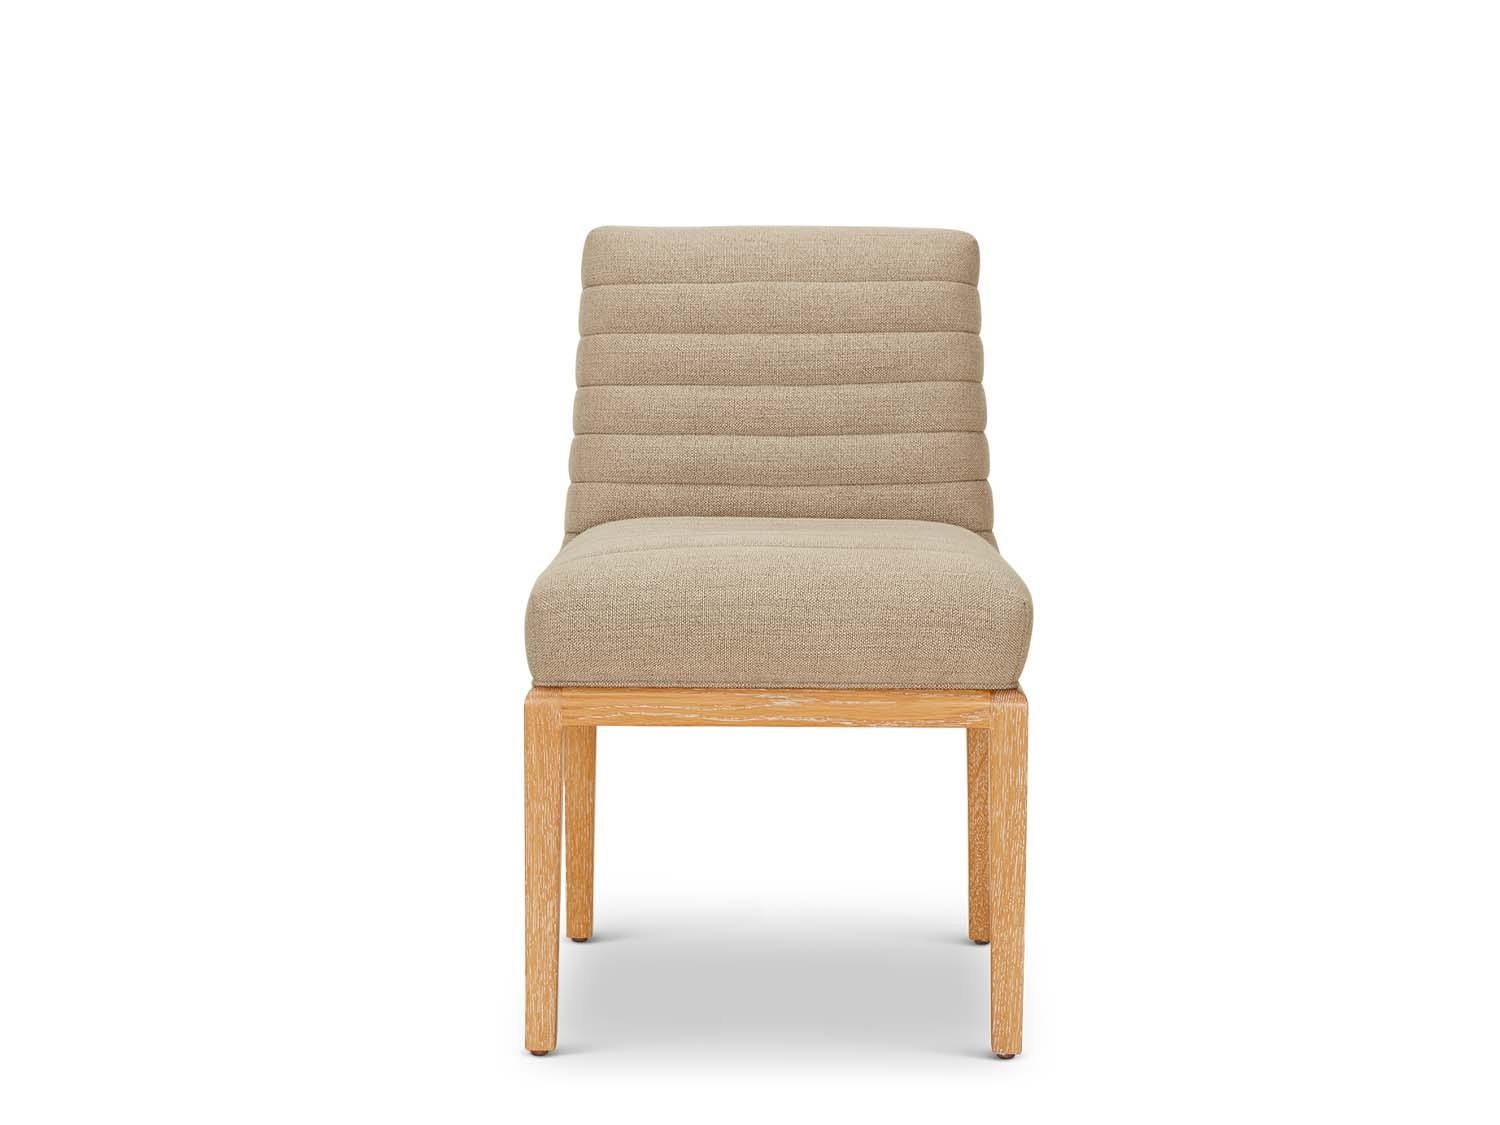 La chaise Shoreland fait partie de la collection collaborative avec le designer d'intérieur Brian Paquette. La chaise de salle à manger est dotée d'un dossier et d'une assise tuftés en canal et d'un cadre en noyer américain ou en chêne blanc massif.